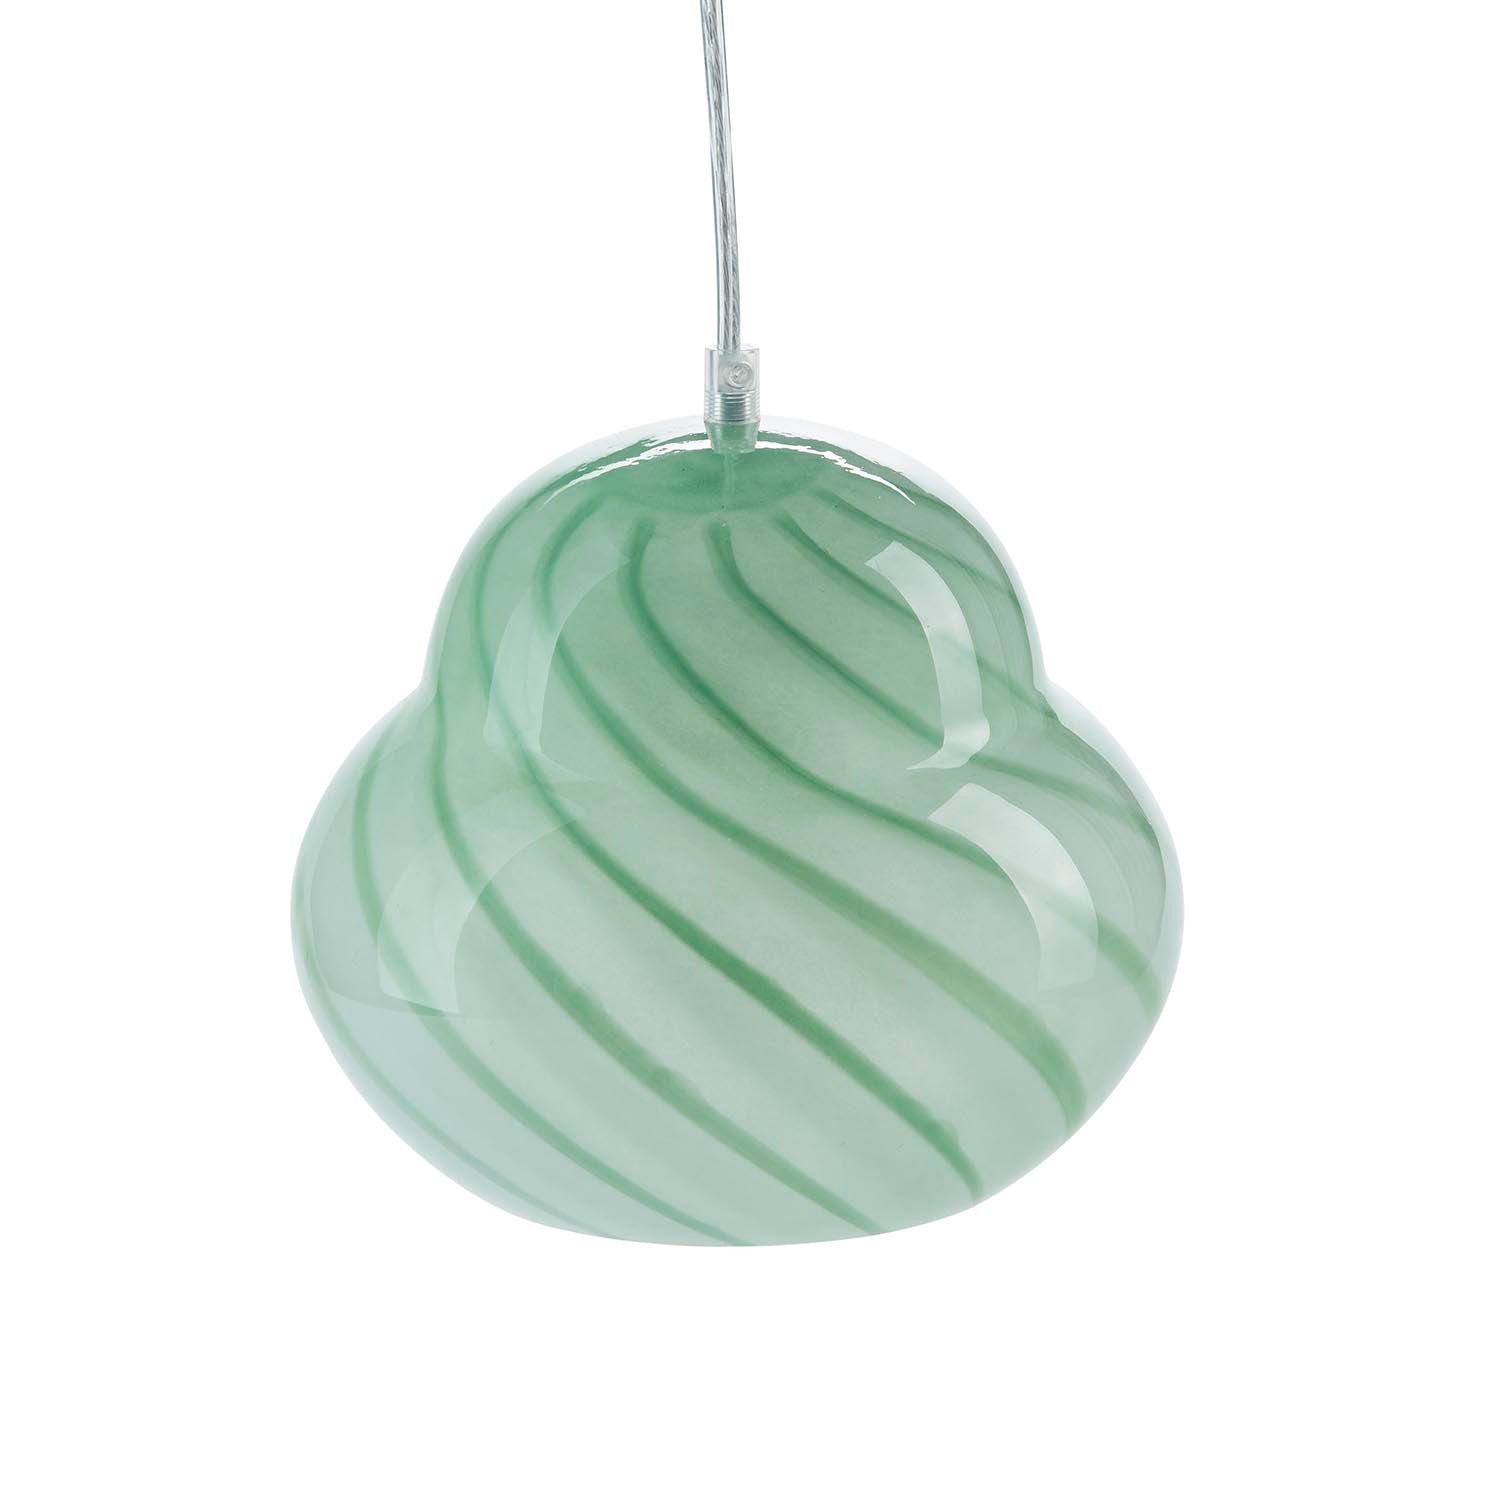 päronformad lampa i färgen grön